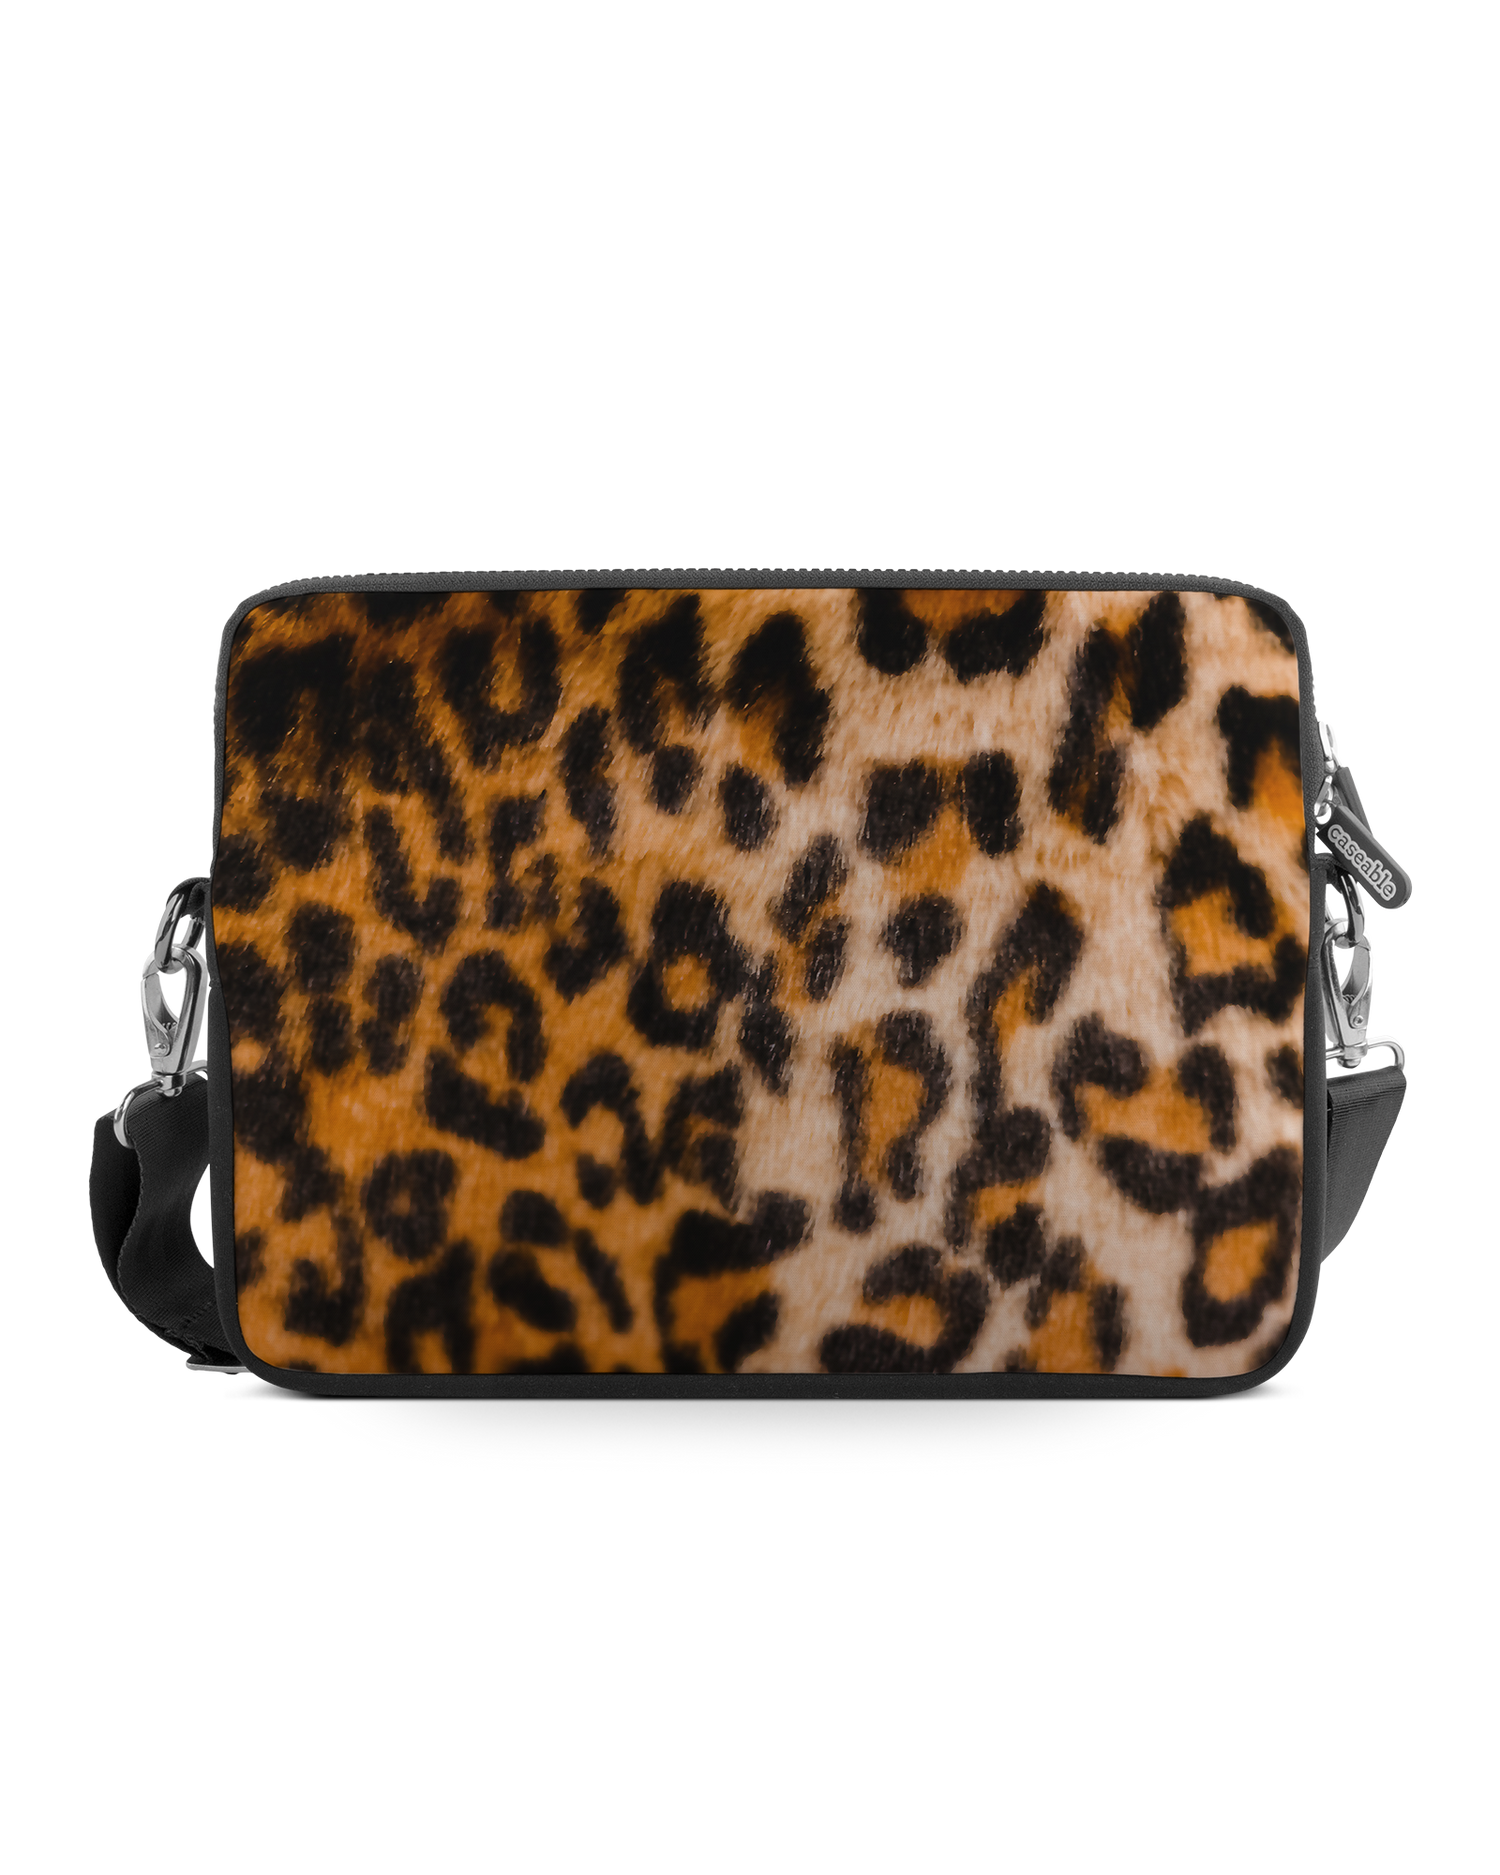 Leopard Pattern Premium Laptop Bag 17 inch: Front View